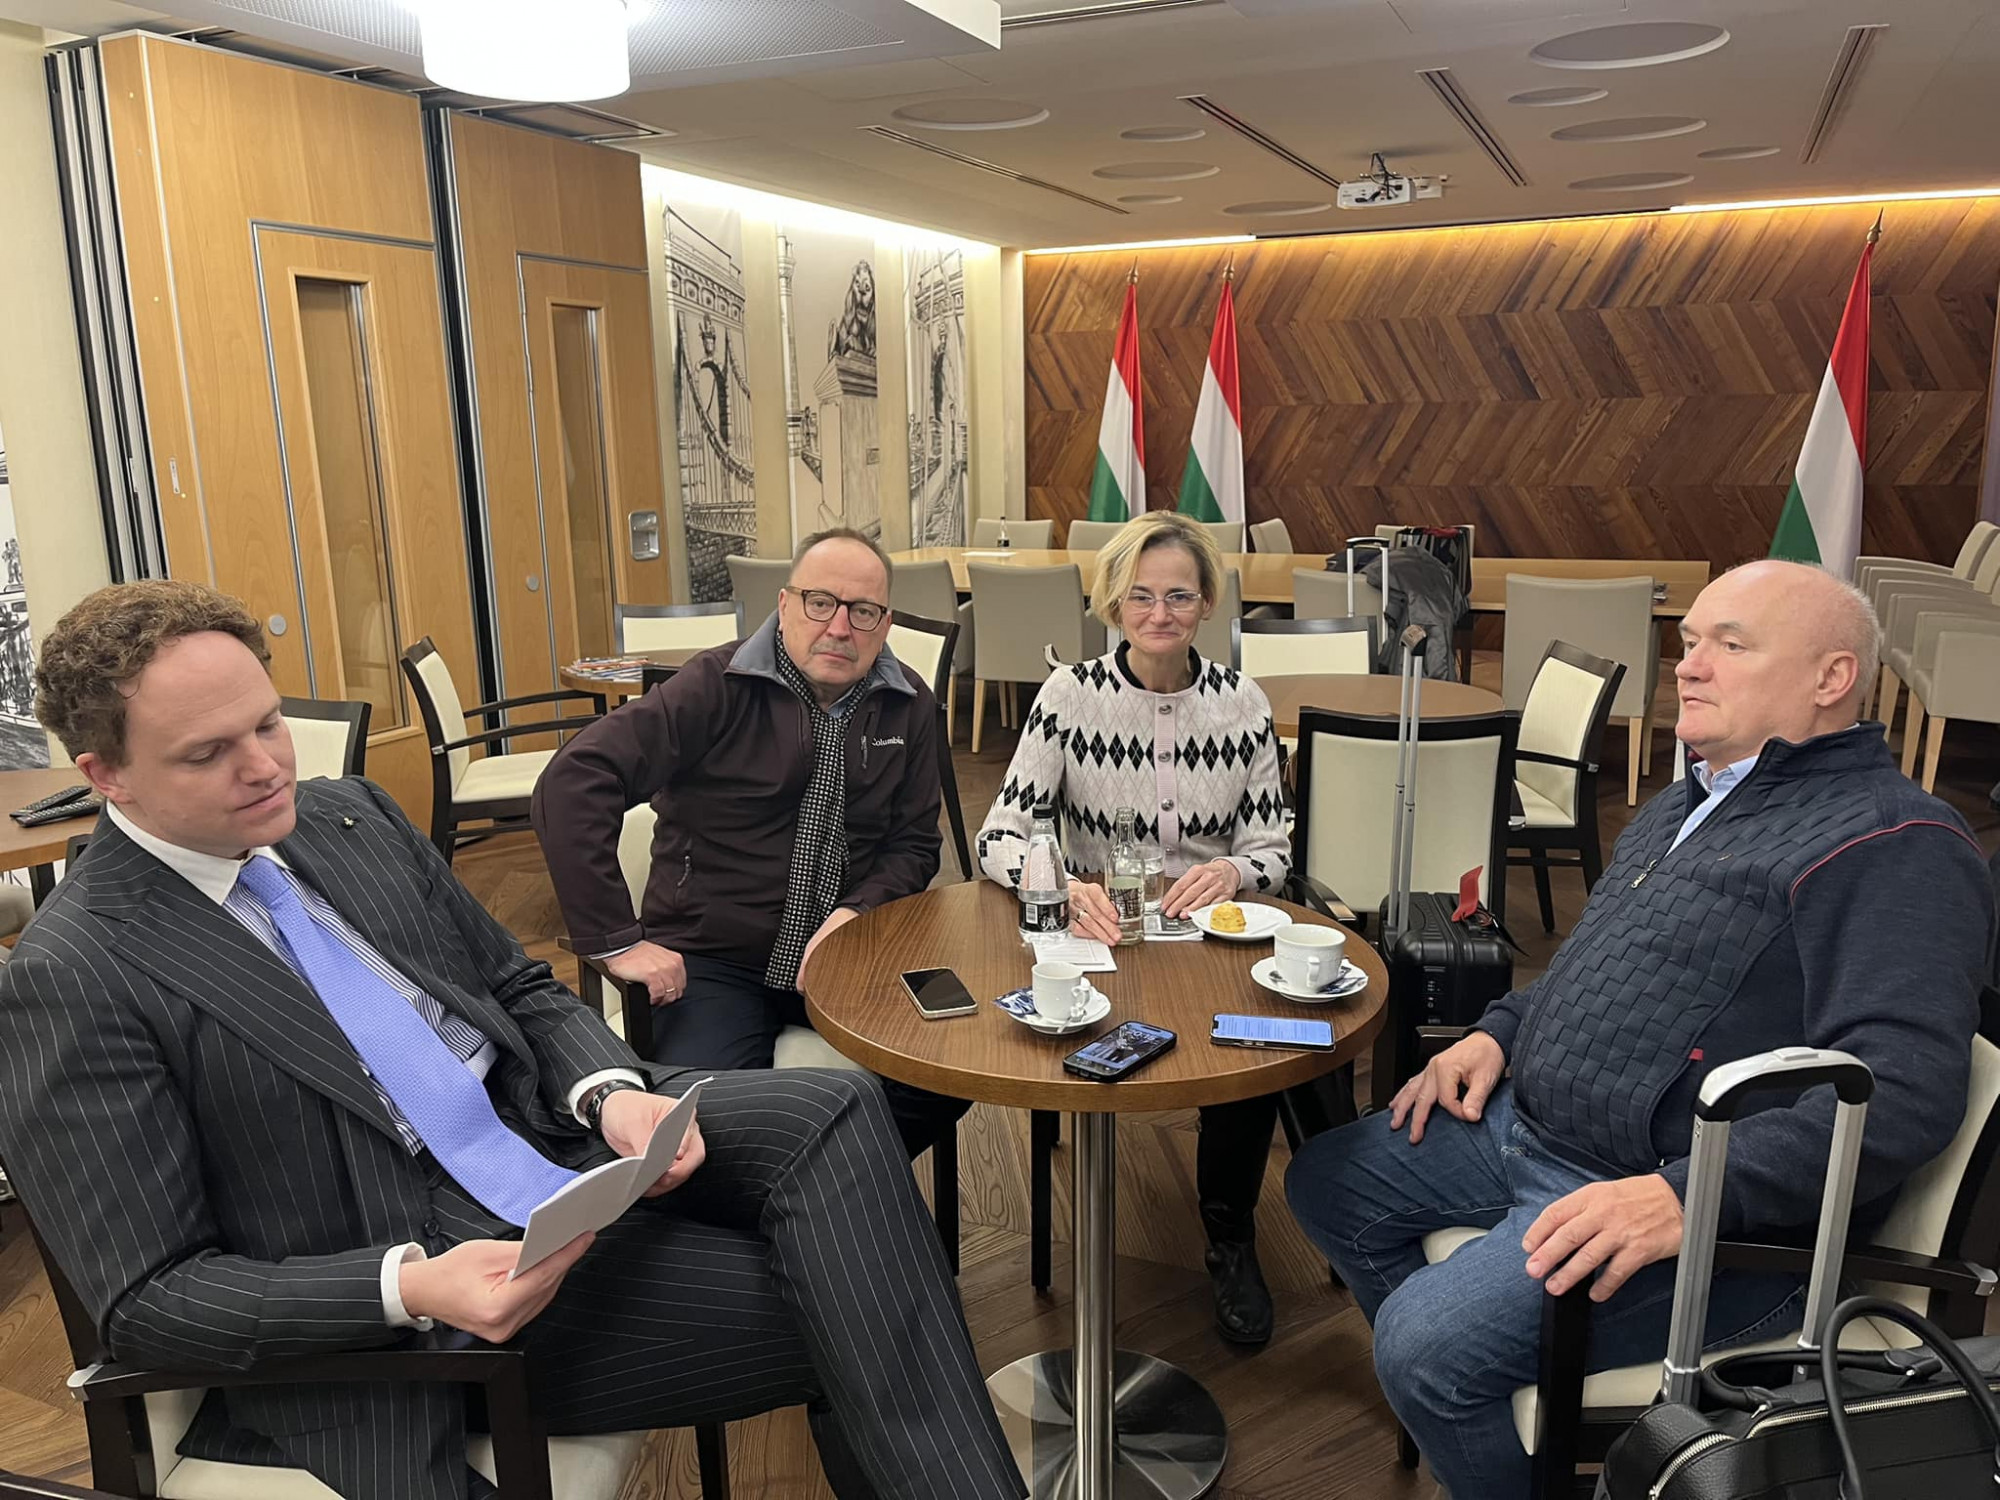 Kedden találkozik a fideszes delegáció a svédekkel